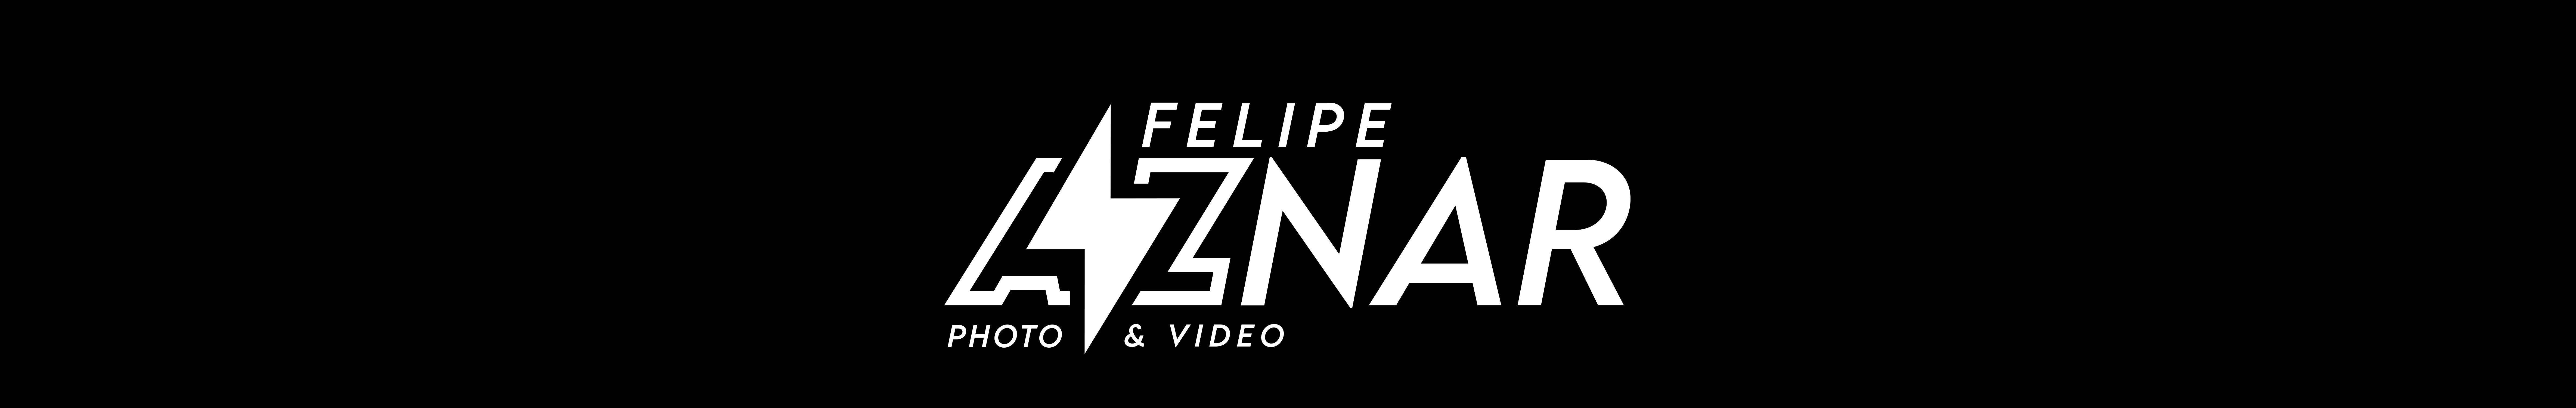 Profil-Banner von Felipe Aznar